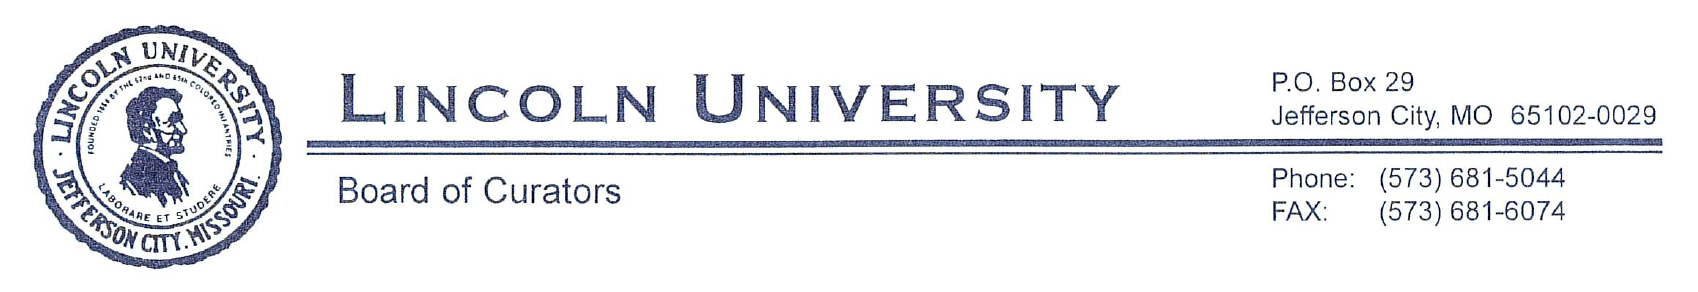 Lincoln University of Missouri Board of Curators